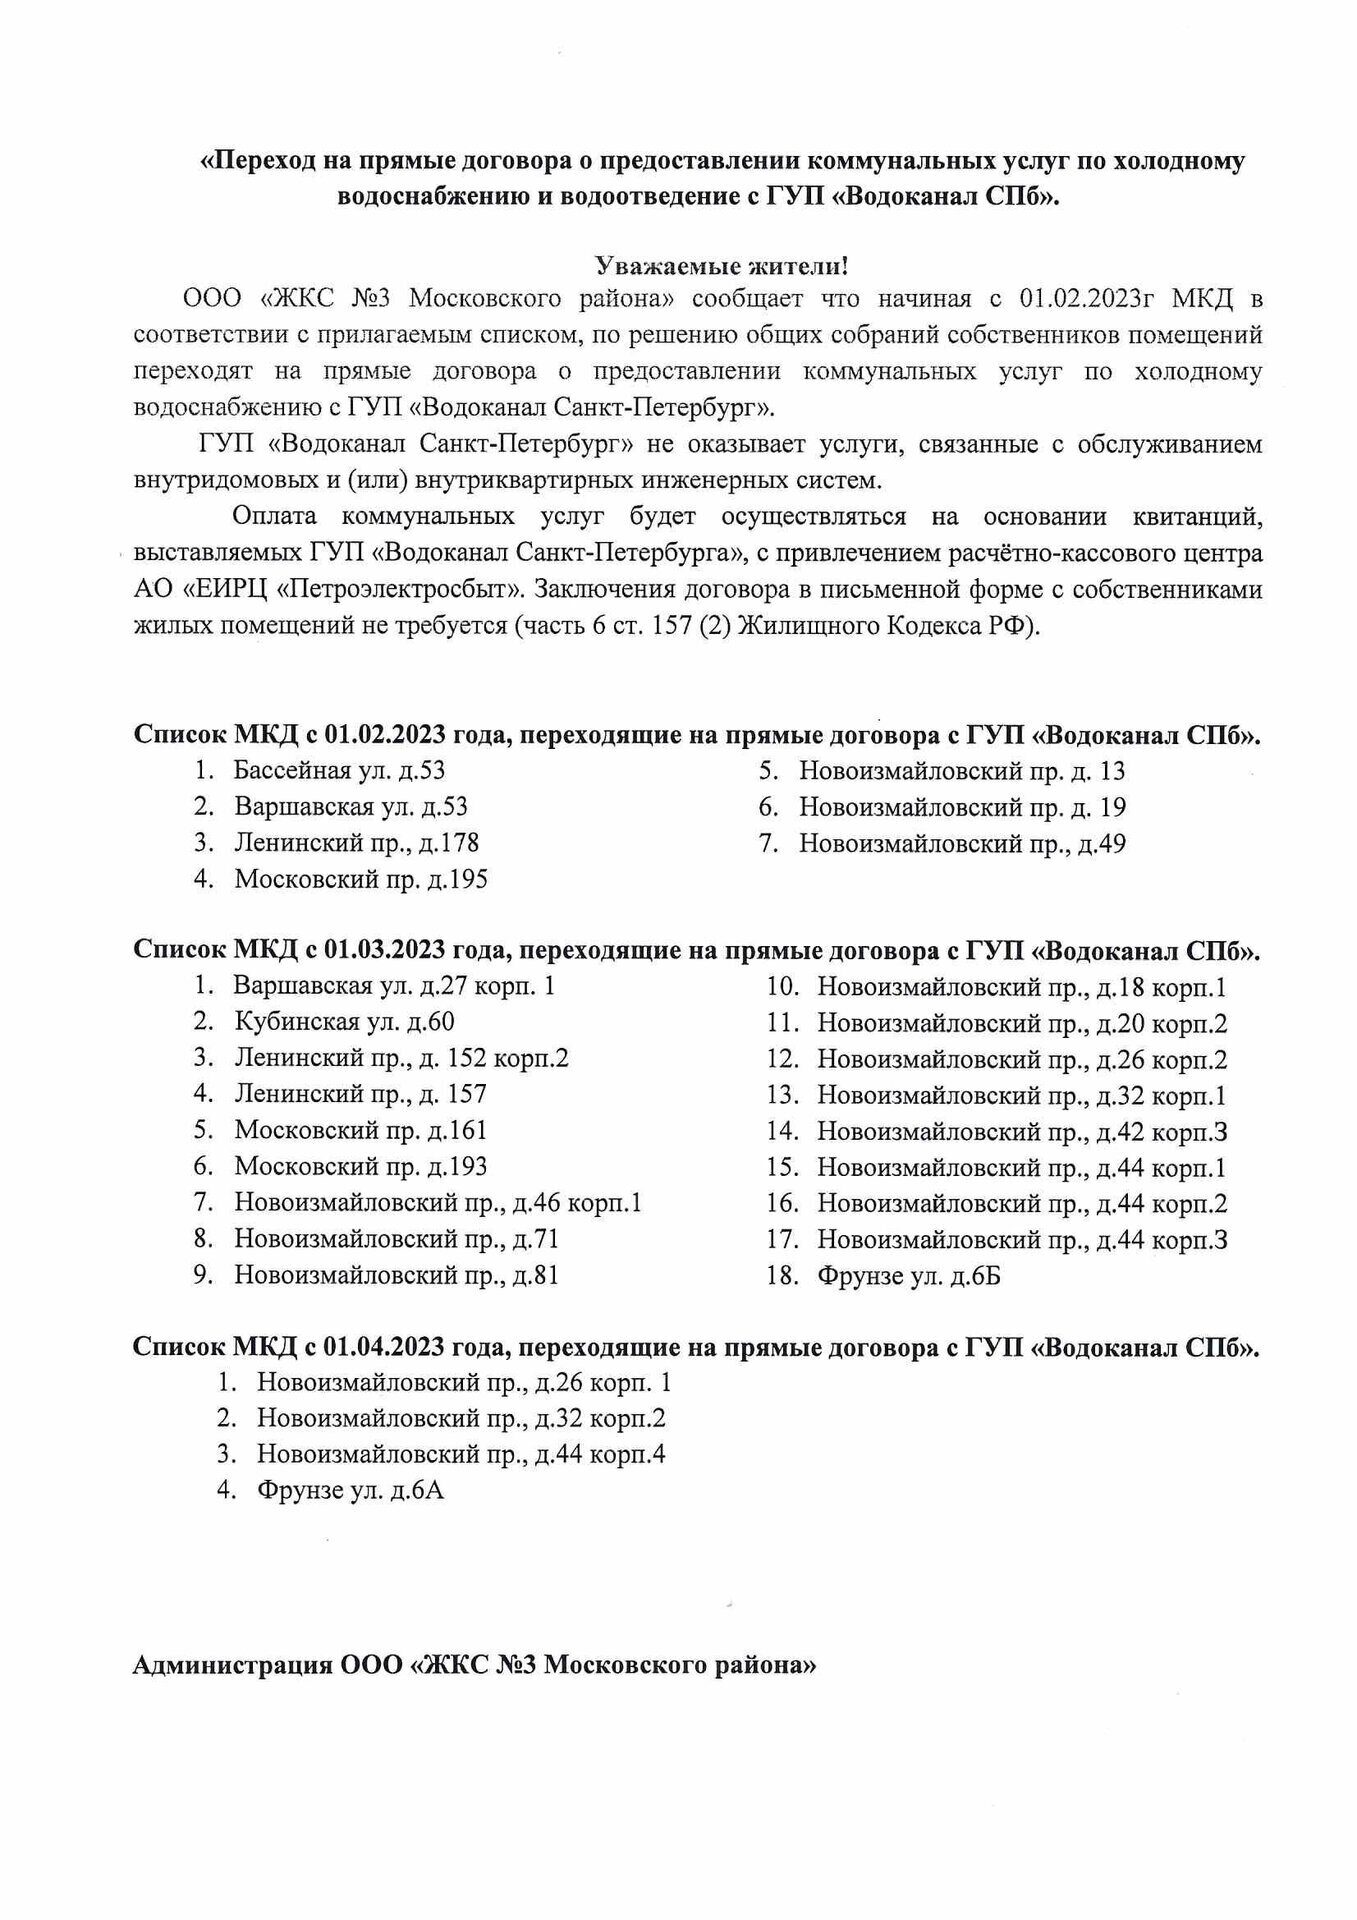 Информация по заключению прямых договоров с ГУП Водокалал СПб.